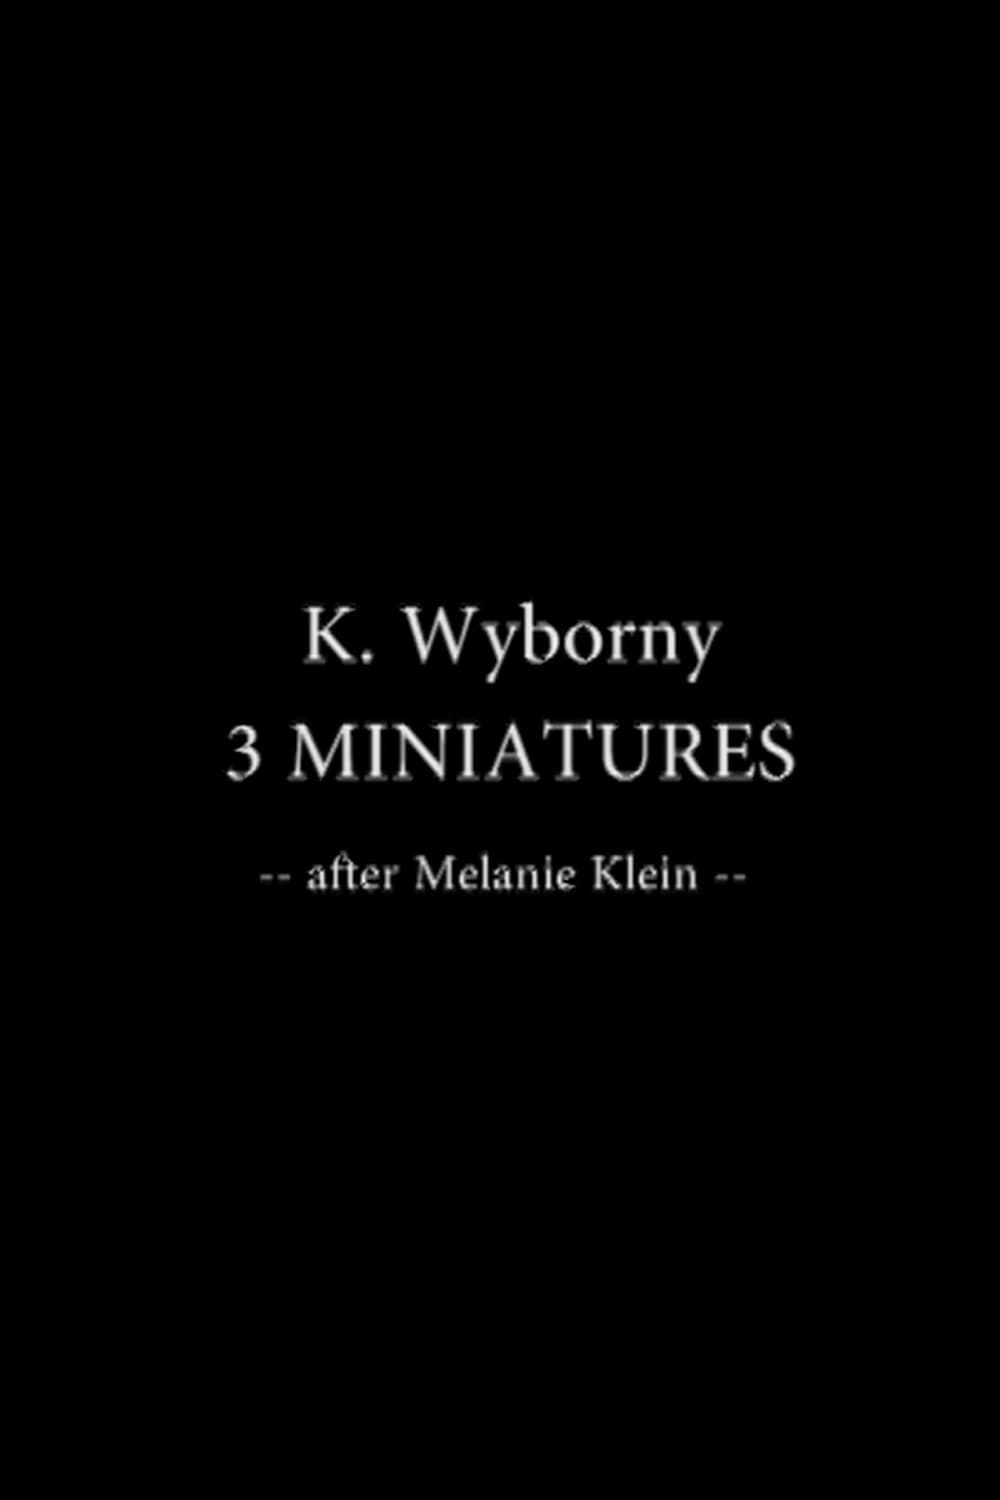 3 Miniatures after Melanie Klein